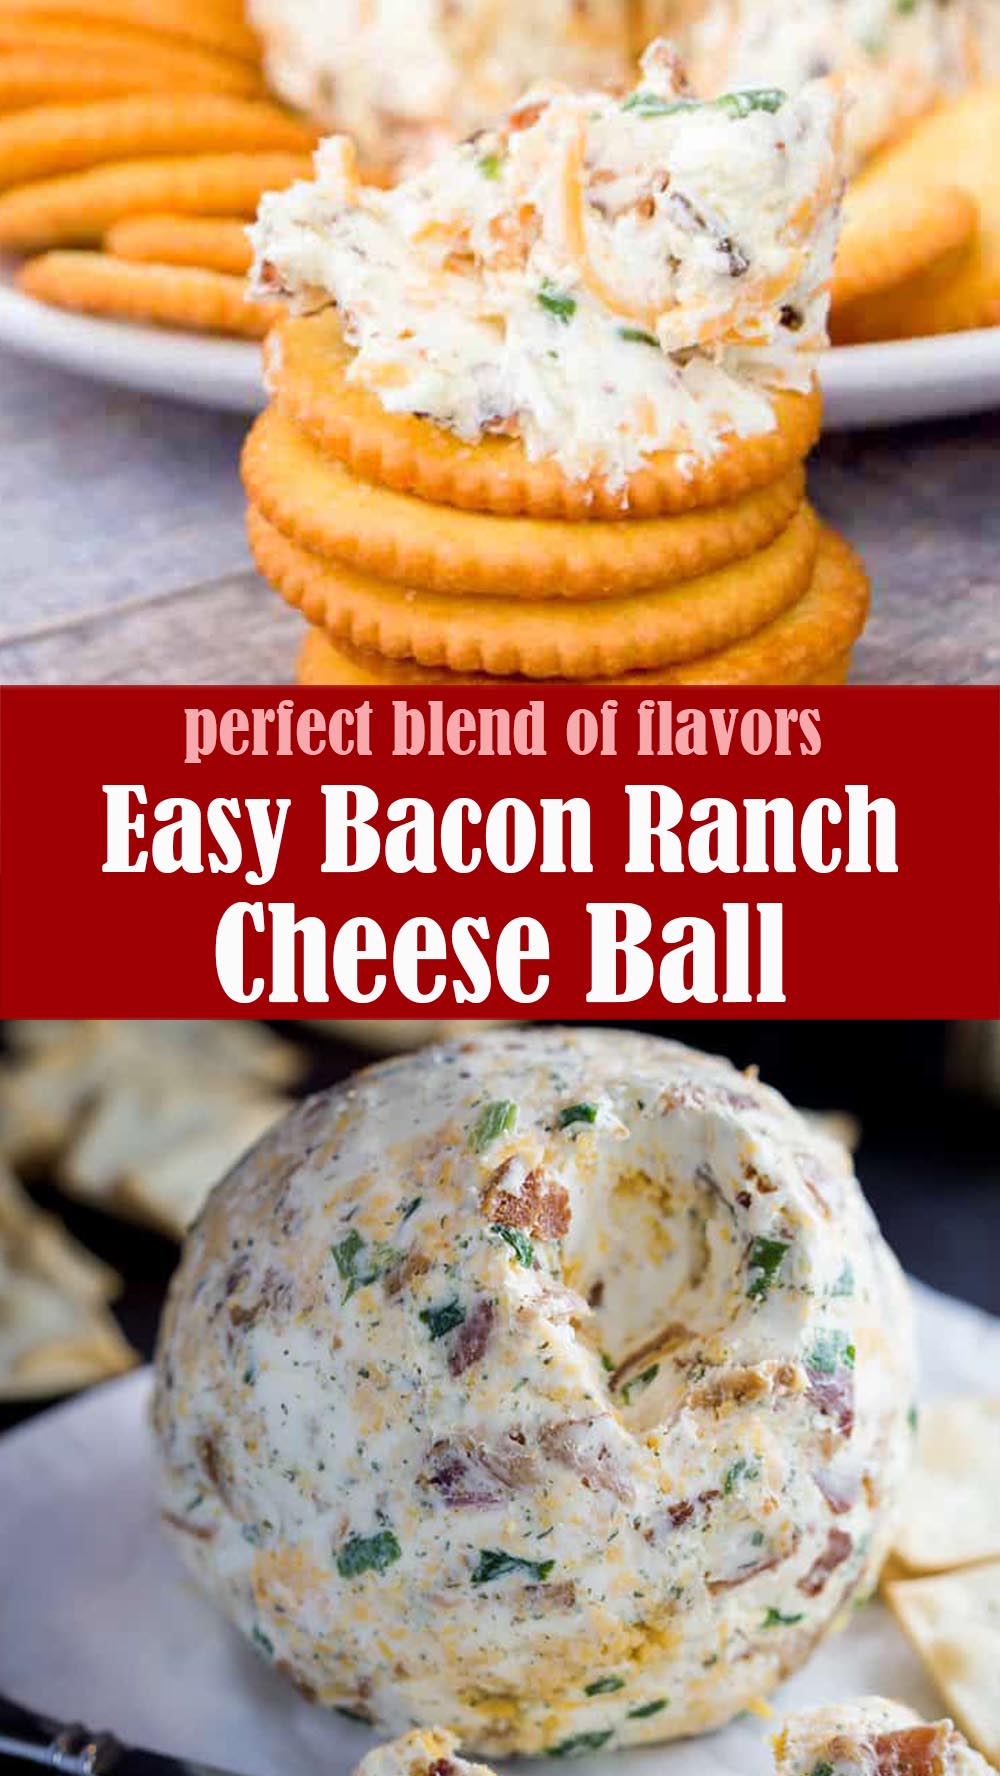 Easy Bacon Ranch Cheese Ball